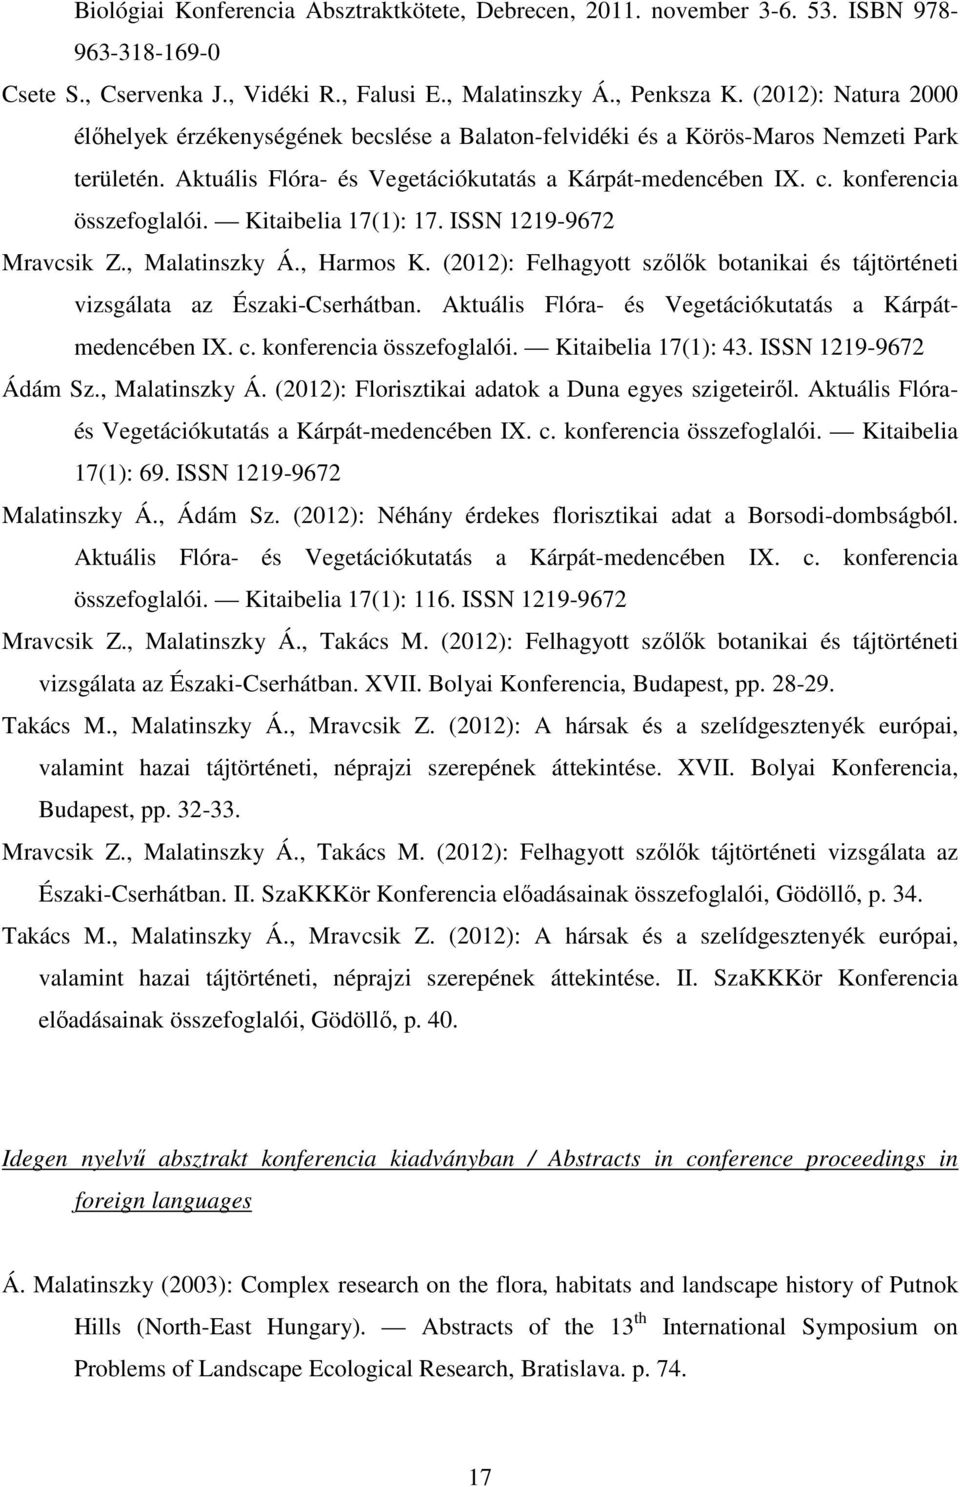 konferencia összefoglalói. Kitaibelia 17(1): 17. ISSN 1219-9672 Mravcsik Z., Malatinszky Á., Harmos K. (2012): Felhagyott szőlők botanikai és tájtörténeti vizsgálata az Északi-Cserhátban.